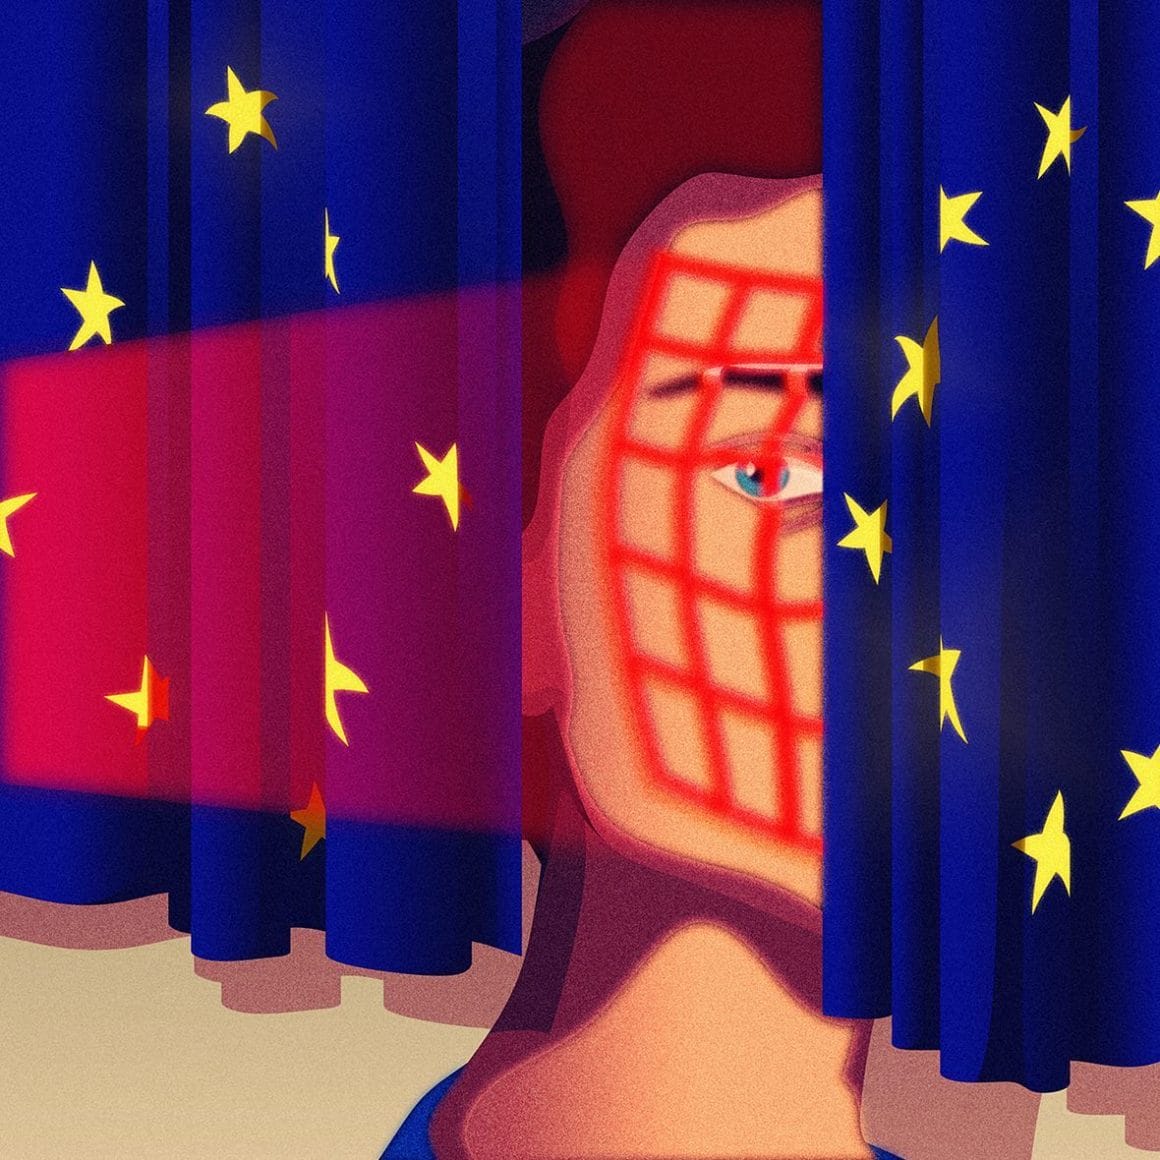 Le visage d'une femme est analysé aux rayons X entre 2 drapeaux européens